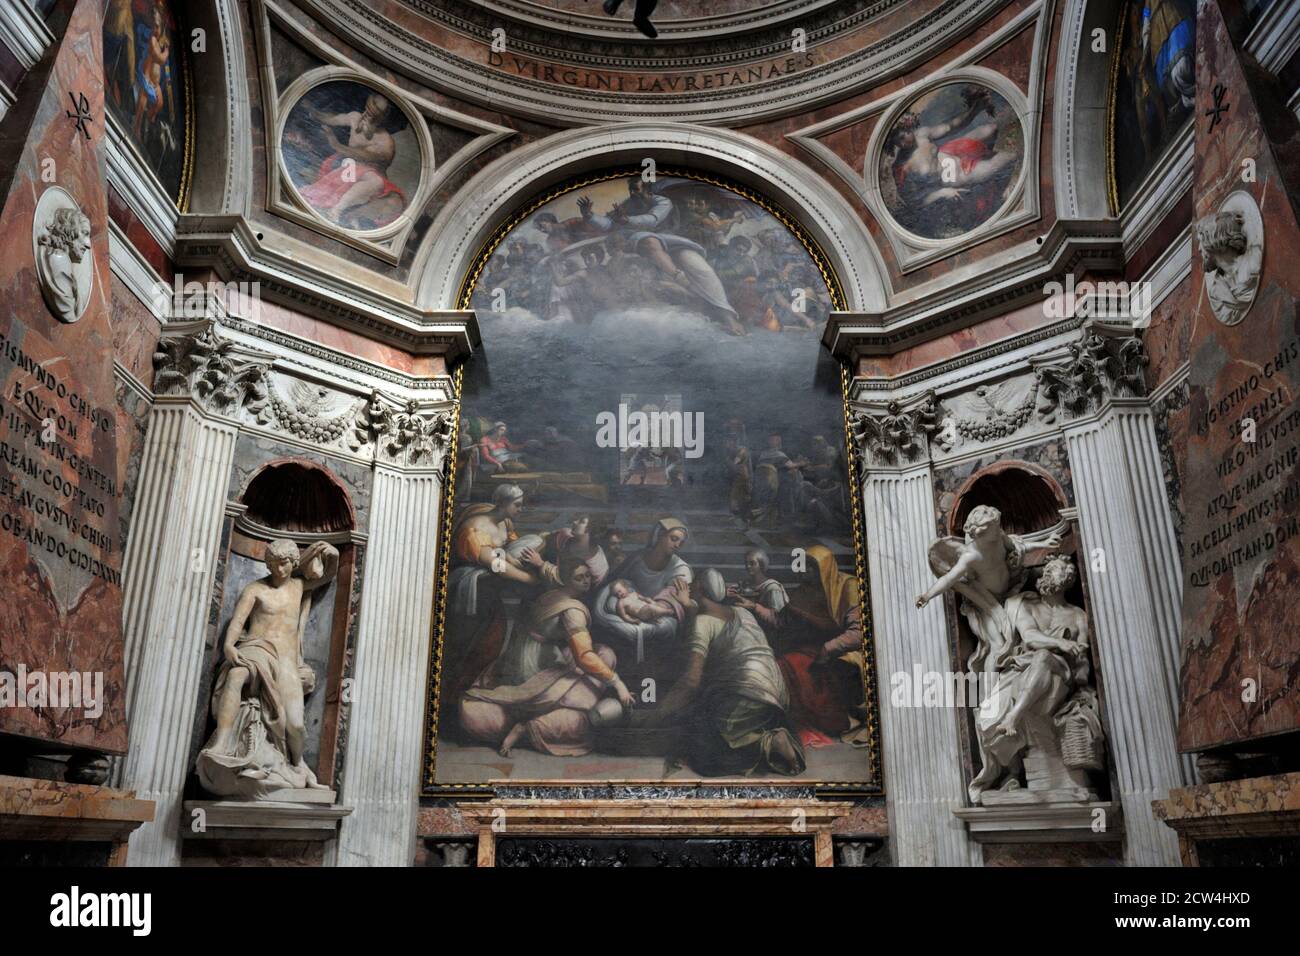 Italie, Rome, Basilique de Santa Maria del Popolo intérieur, Cappella Chigi, Sebastiano del Piombo peinture “Nascita della Vergine” (16e siècle) Banque D'Images